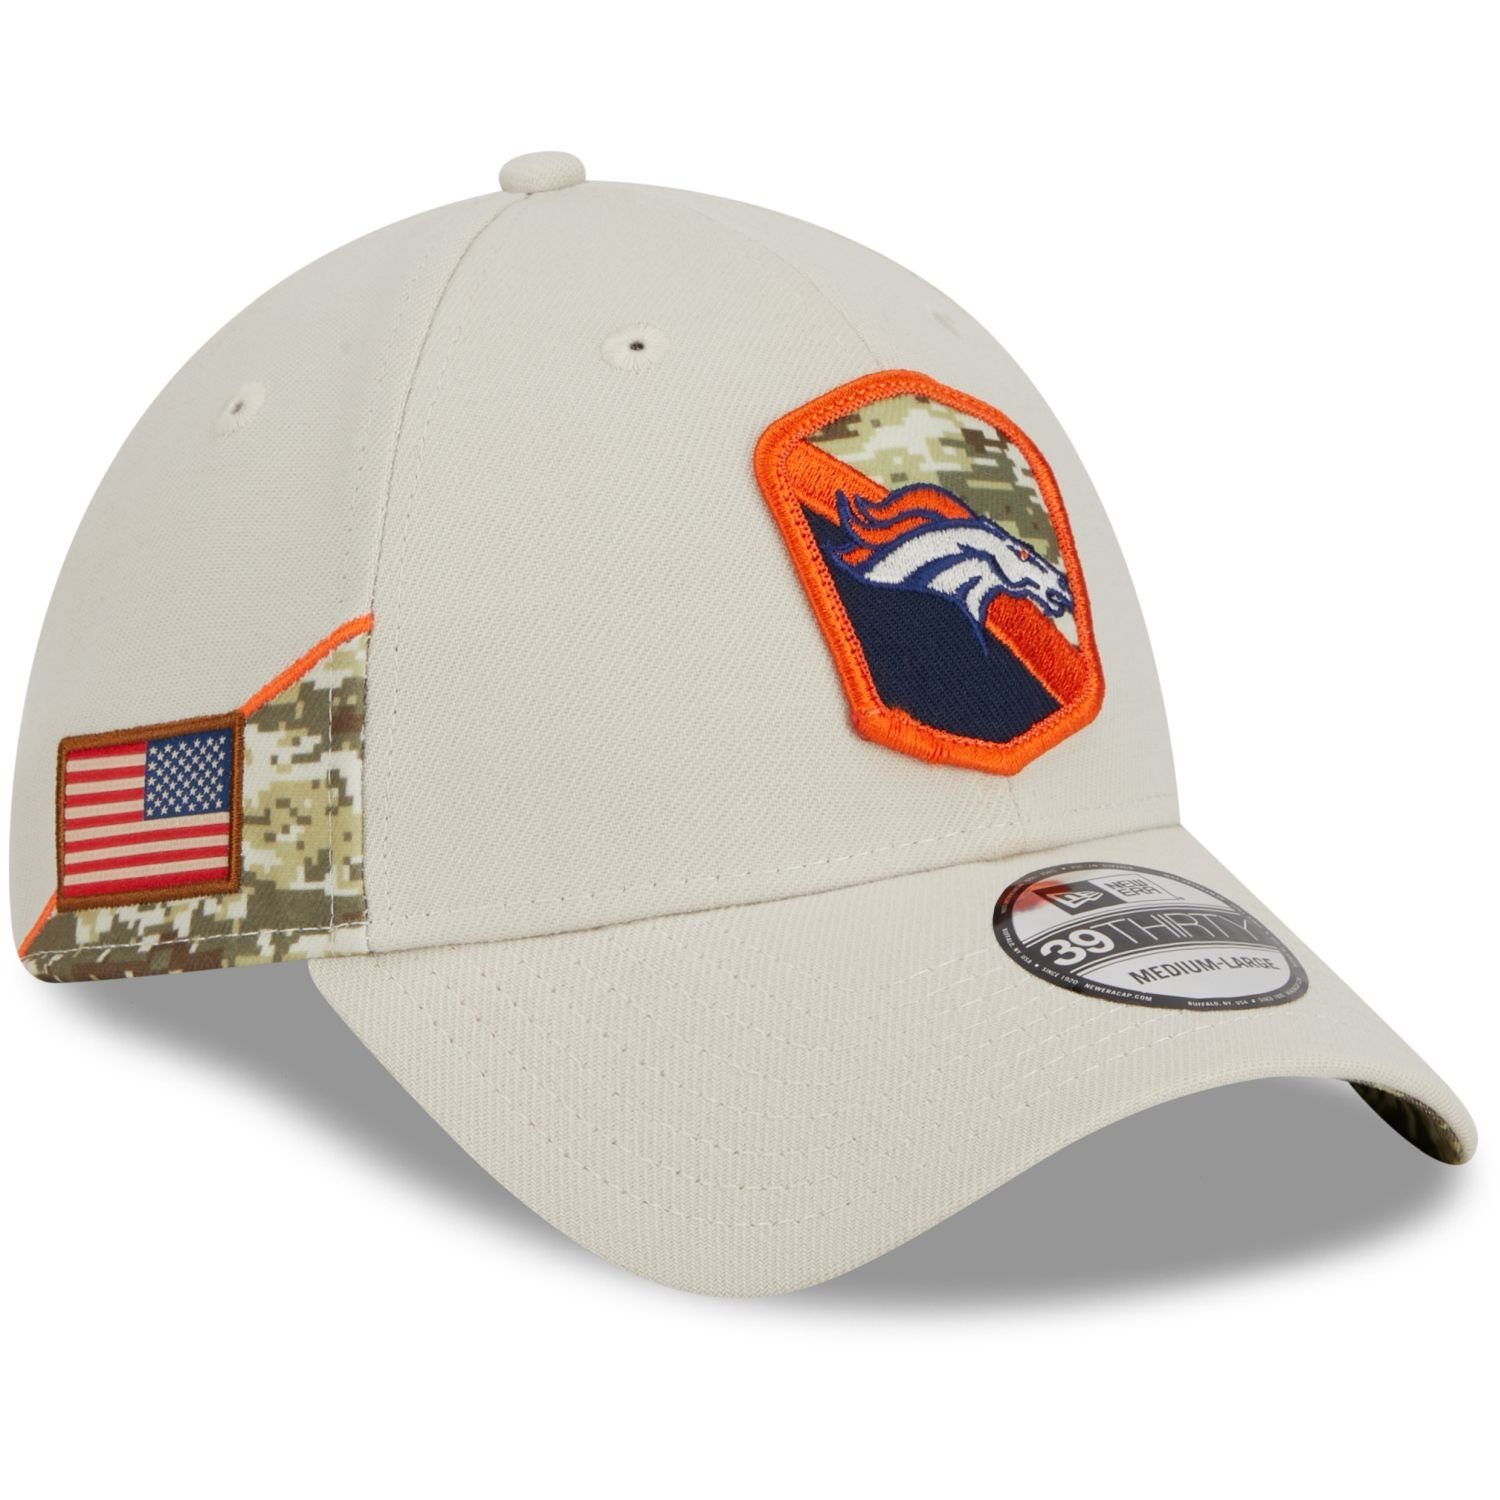 New Era Flex Cap 39Thirty StretchFit NFL Salute to Service Denver Broncos